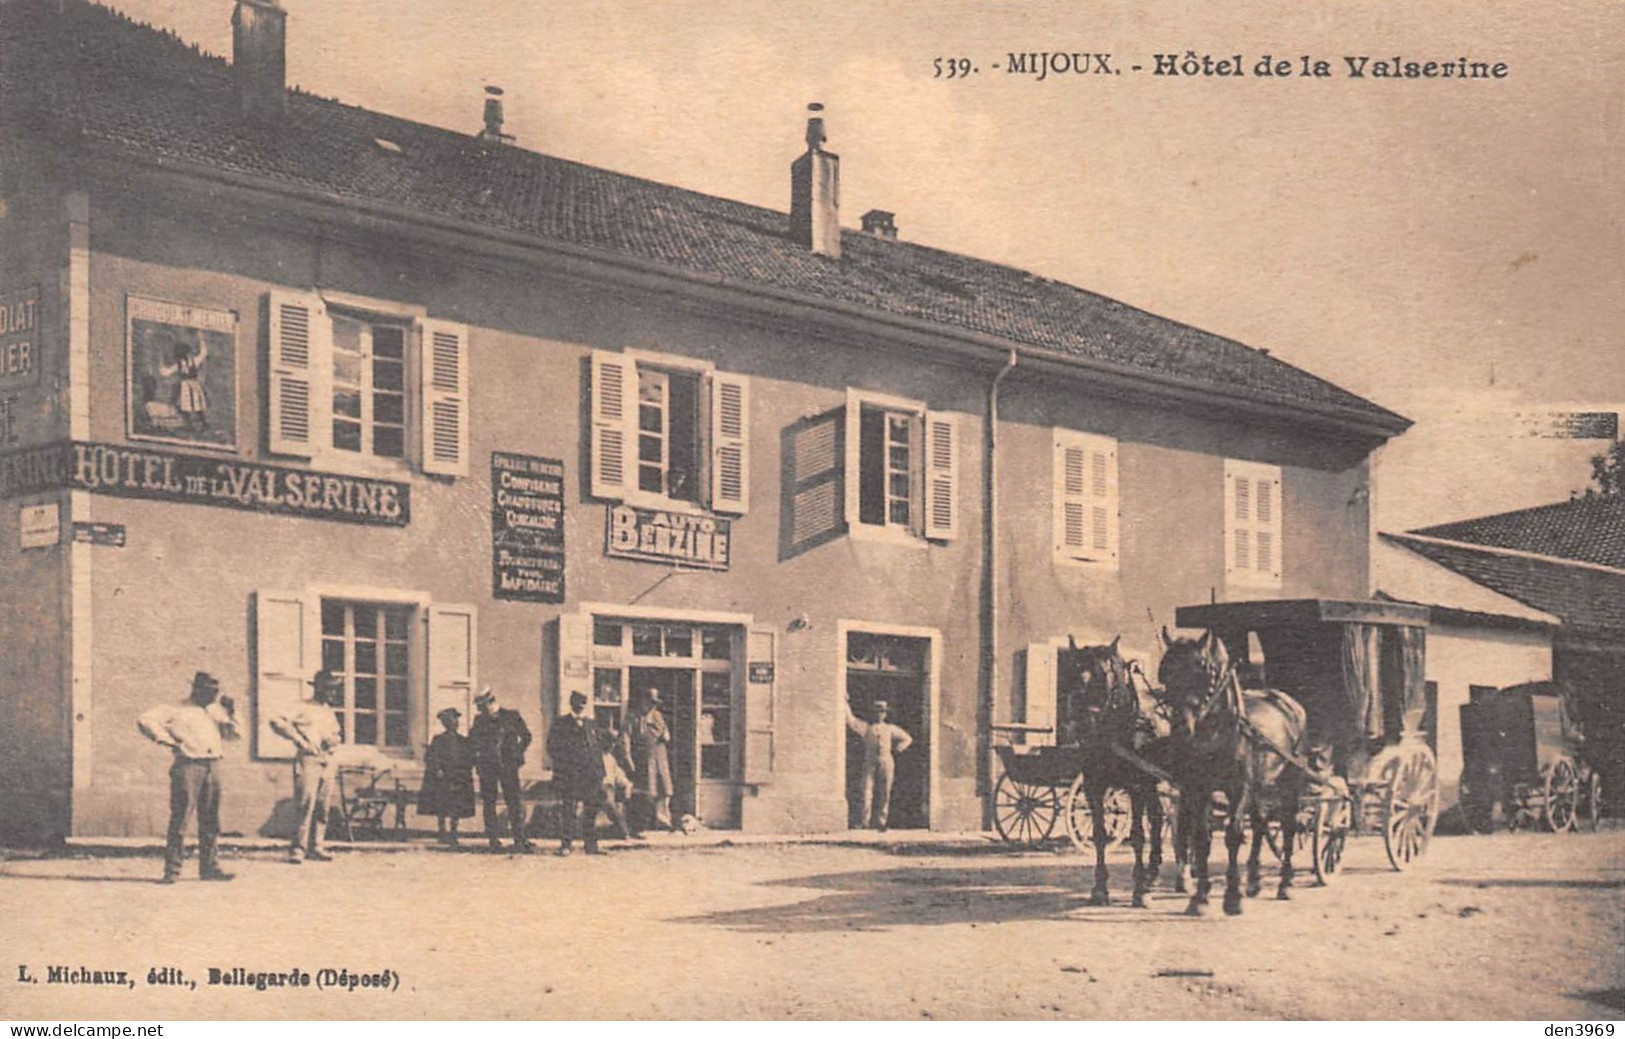 MIJOUX (Ain) - Hôtel De La Valserine - Attelage De Cheval - Publicité Auto Benzine - Ohne Zuordnung